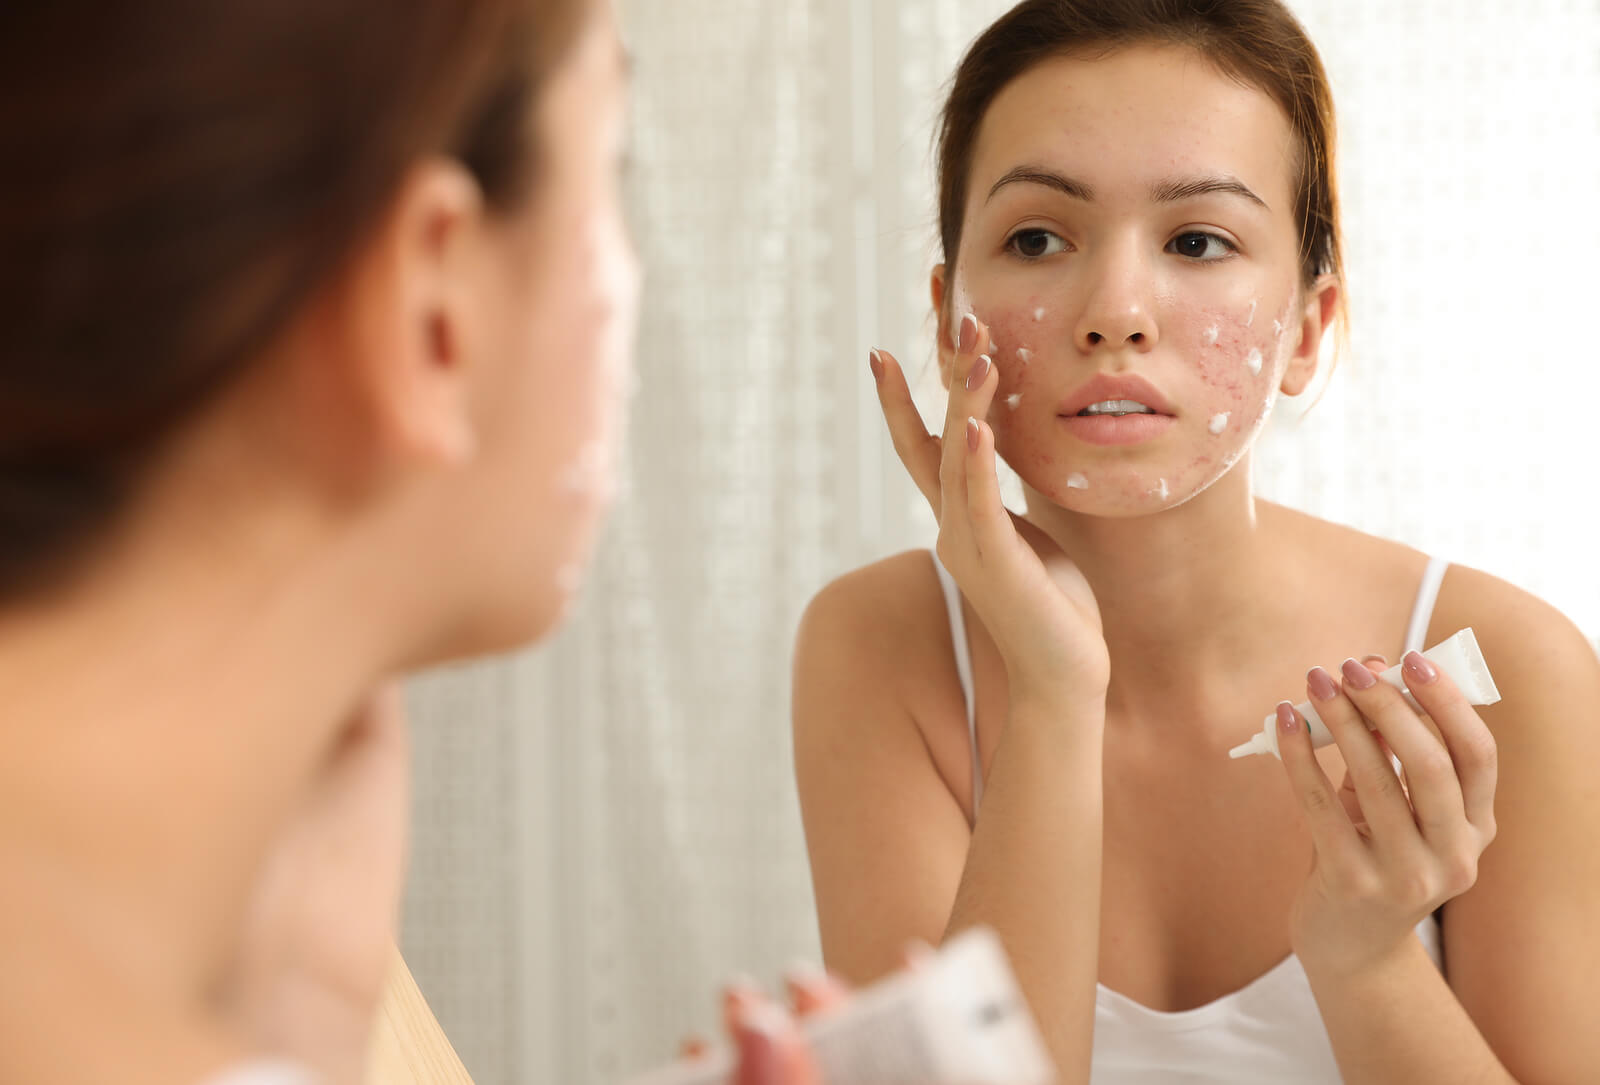 Adolescente utilisant un traitement contre l'acné juvénile.